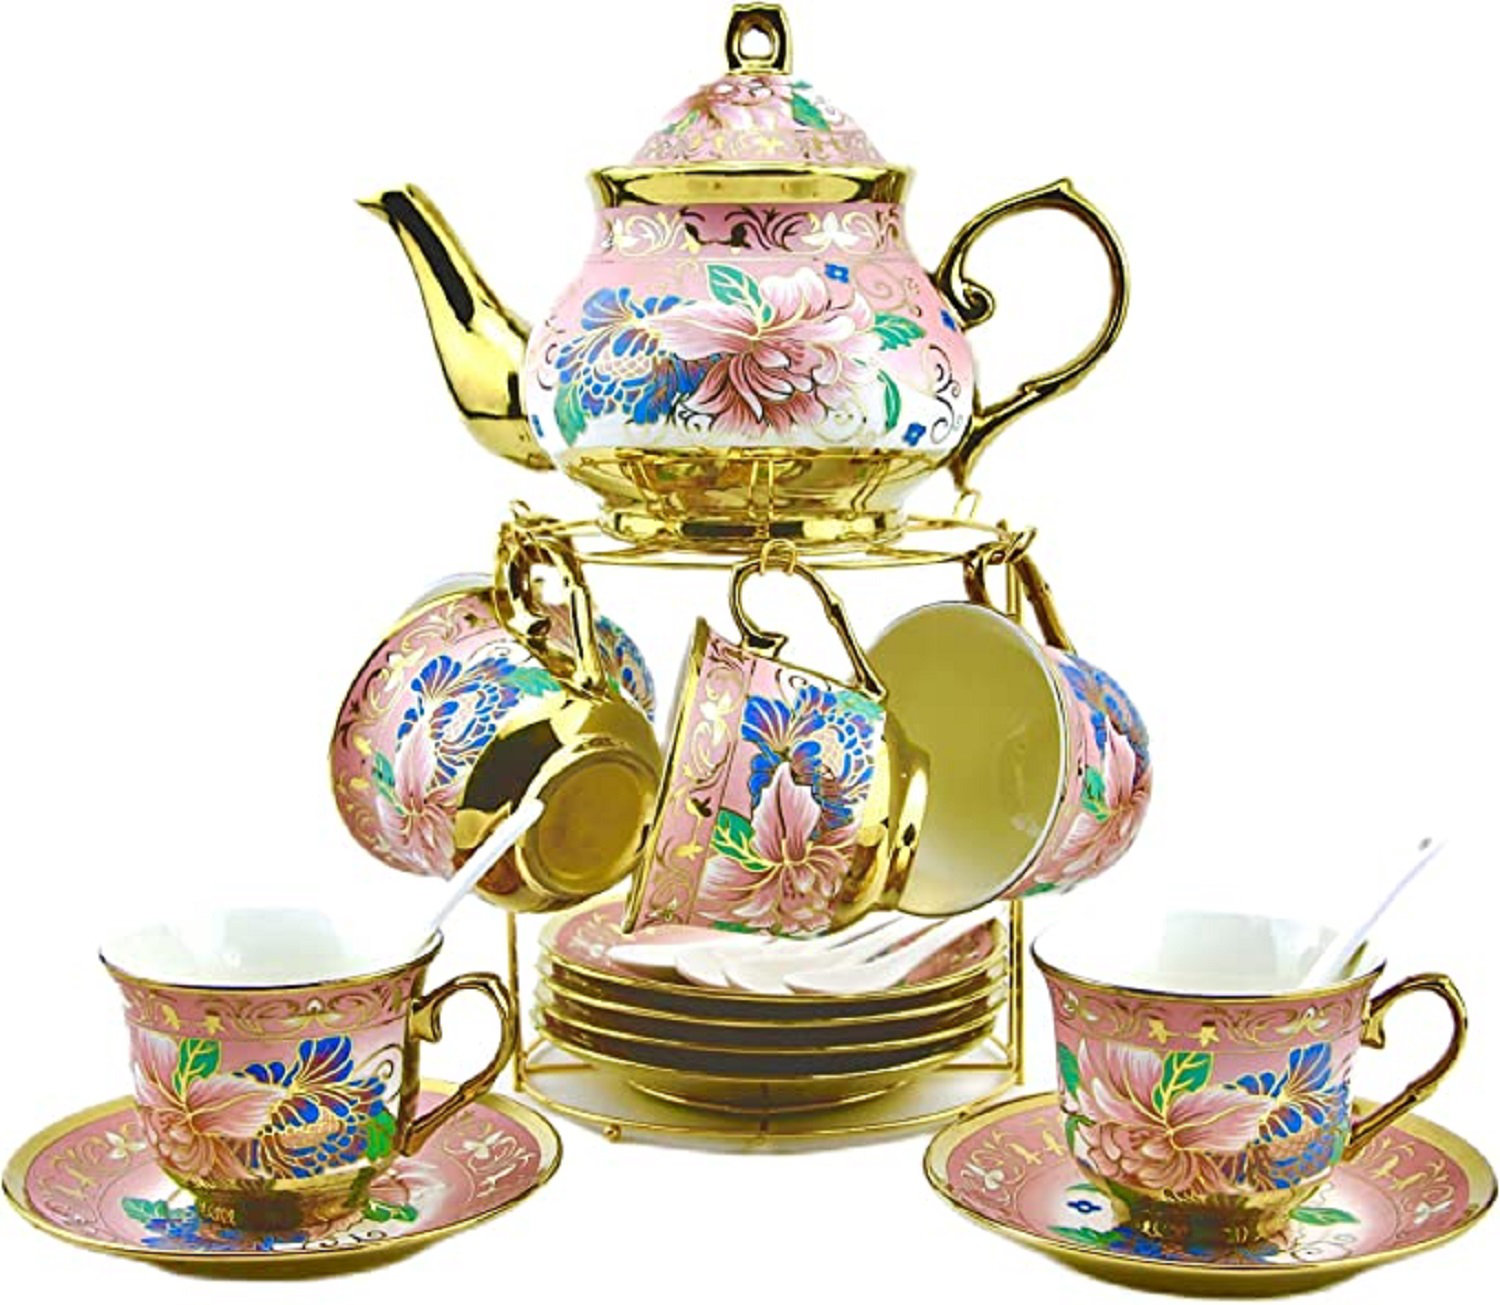 https://assets.wfcdn.com/im/20833419/compr-r85/2402/240249806/house-of-hampton-fardeen-27oz-floral-teapot-set.jpg